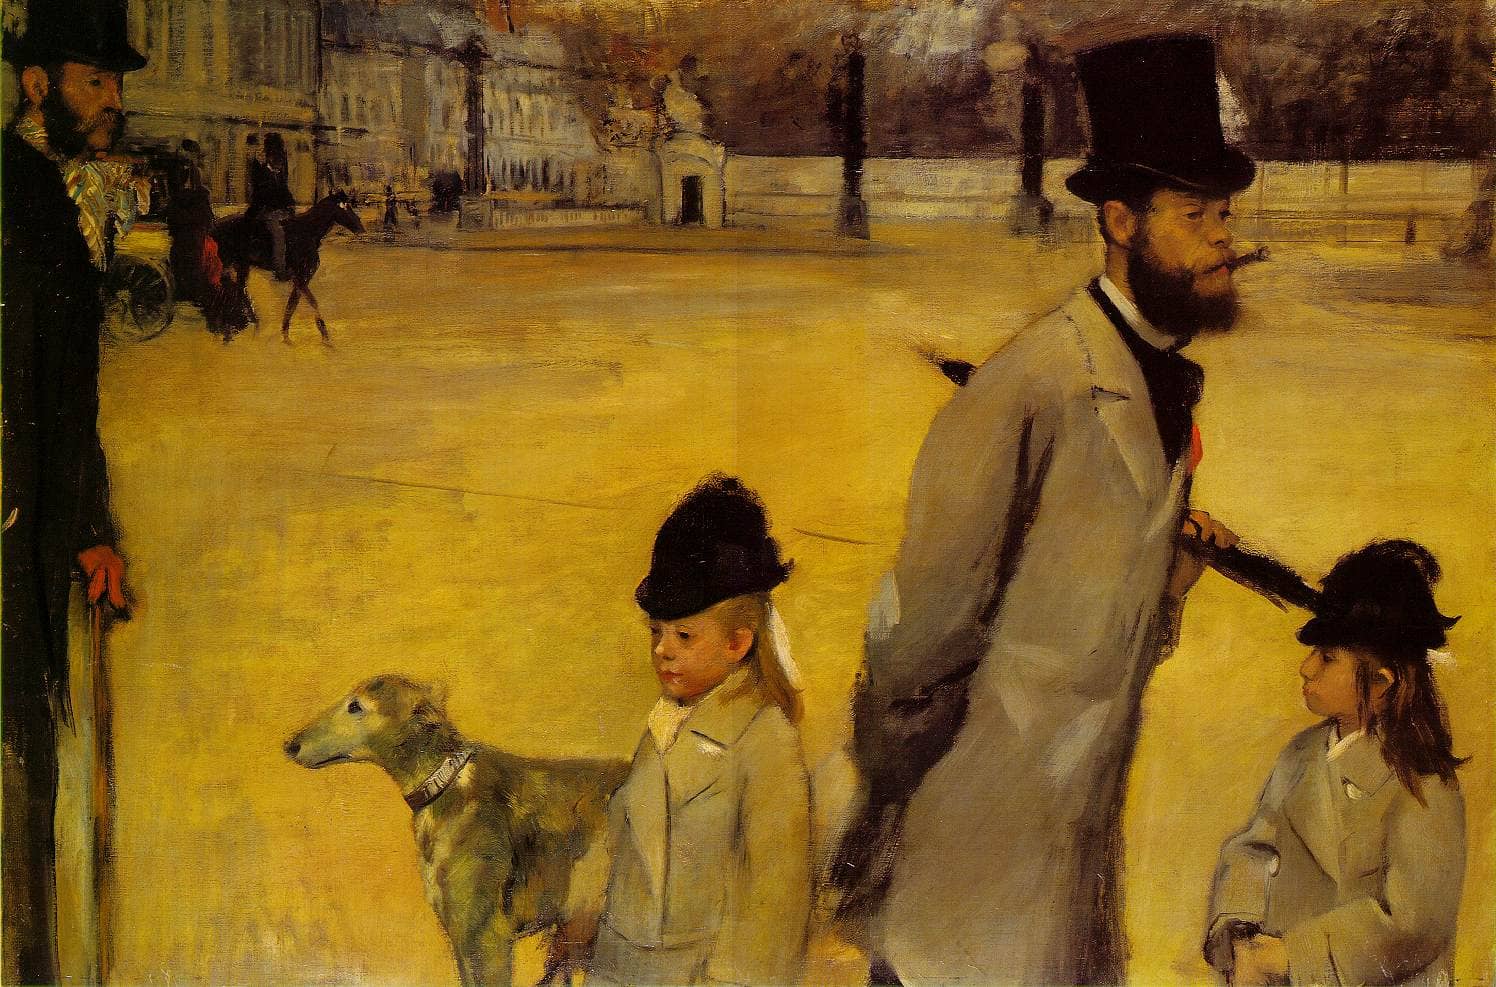 Place de la Concorde, 1875 by Edgar Degas